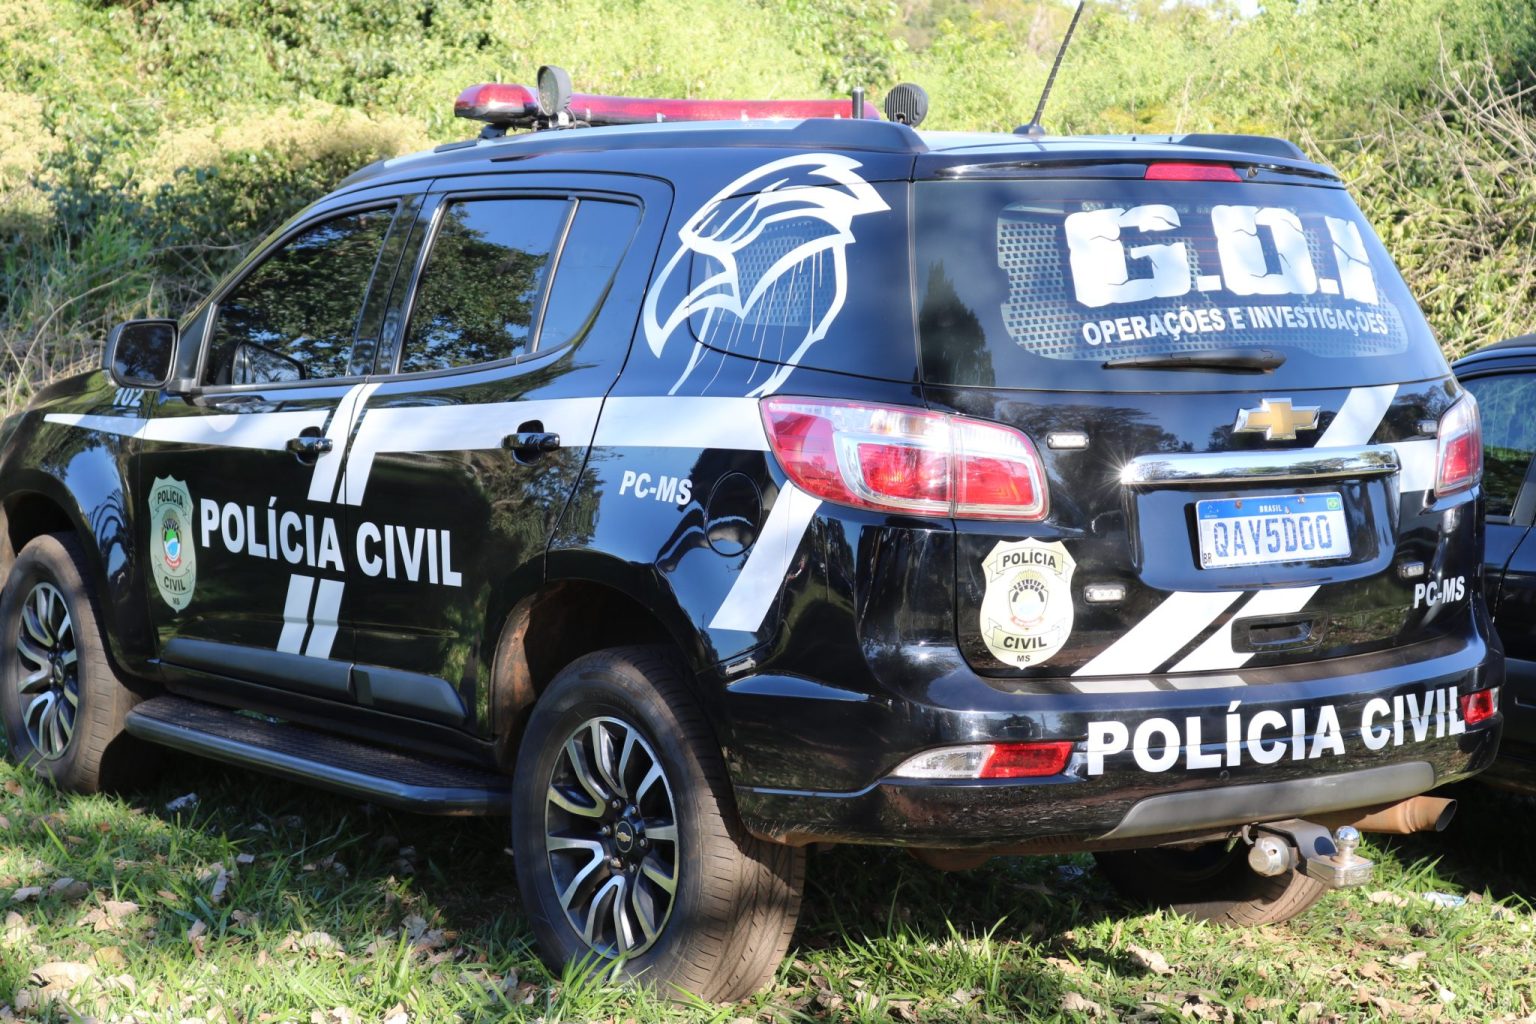 Guaicurus News - Polícia Civil cumpre mandado de prisão em desfavor de indivíduo em Campo Grande